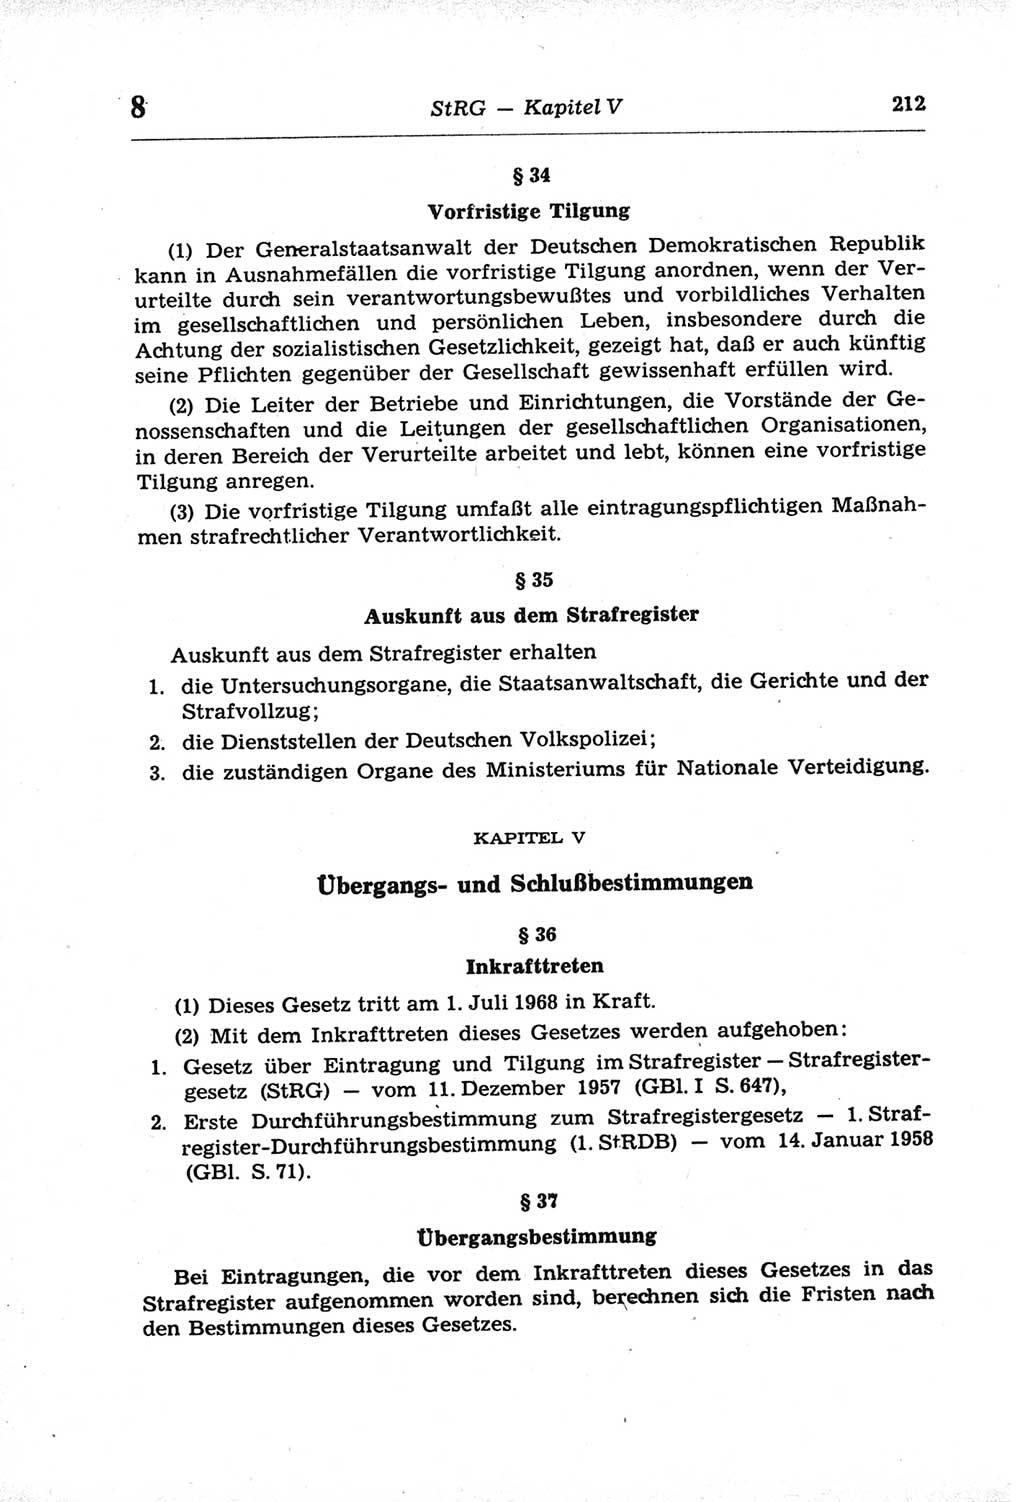 Strafprozeßordnung (StPO) der Deutschen Demokratischen Republik (DDR) und angrenzende Gesetze und Bestimmungen 1968, Seite 212 (StPO Ges. Bstgn. DDR 1968, S. 212)